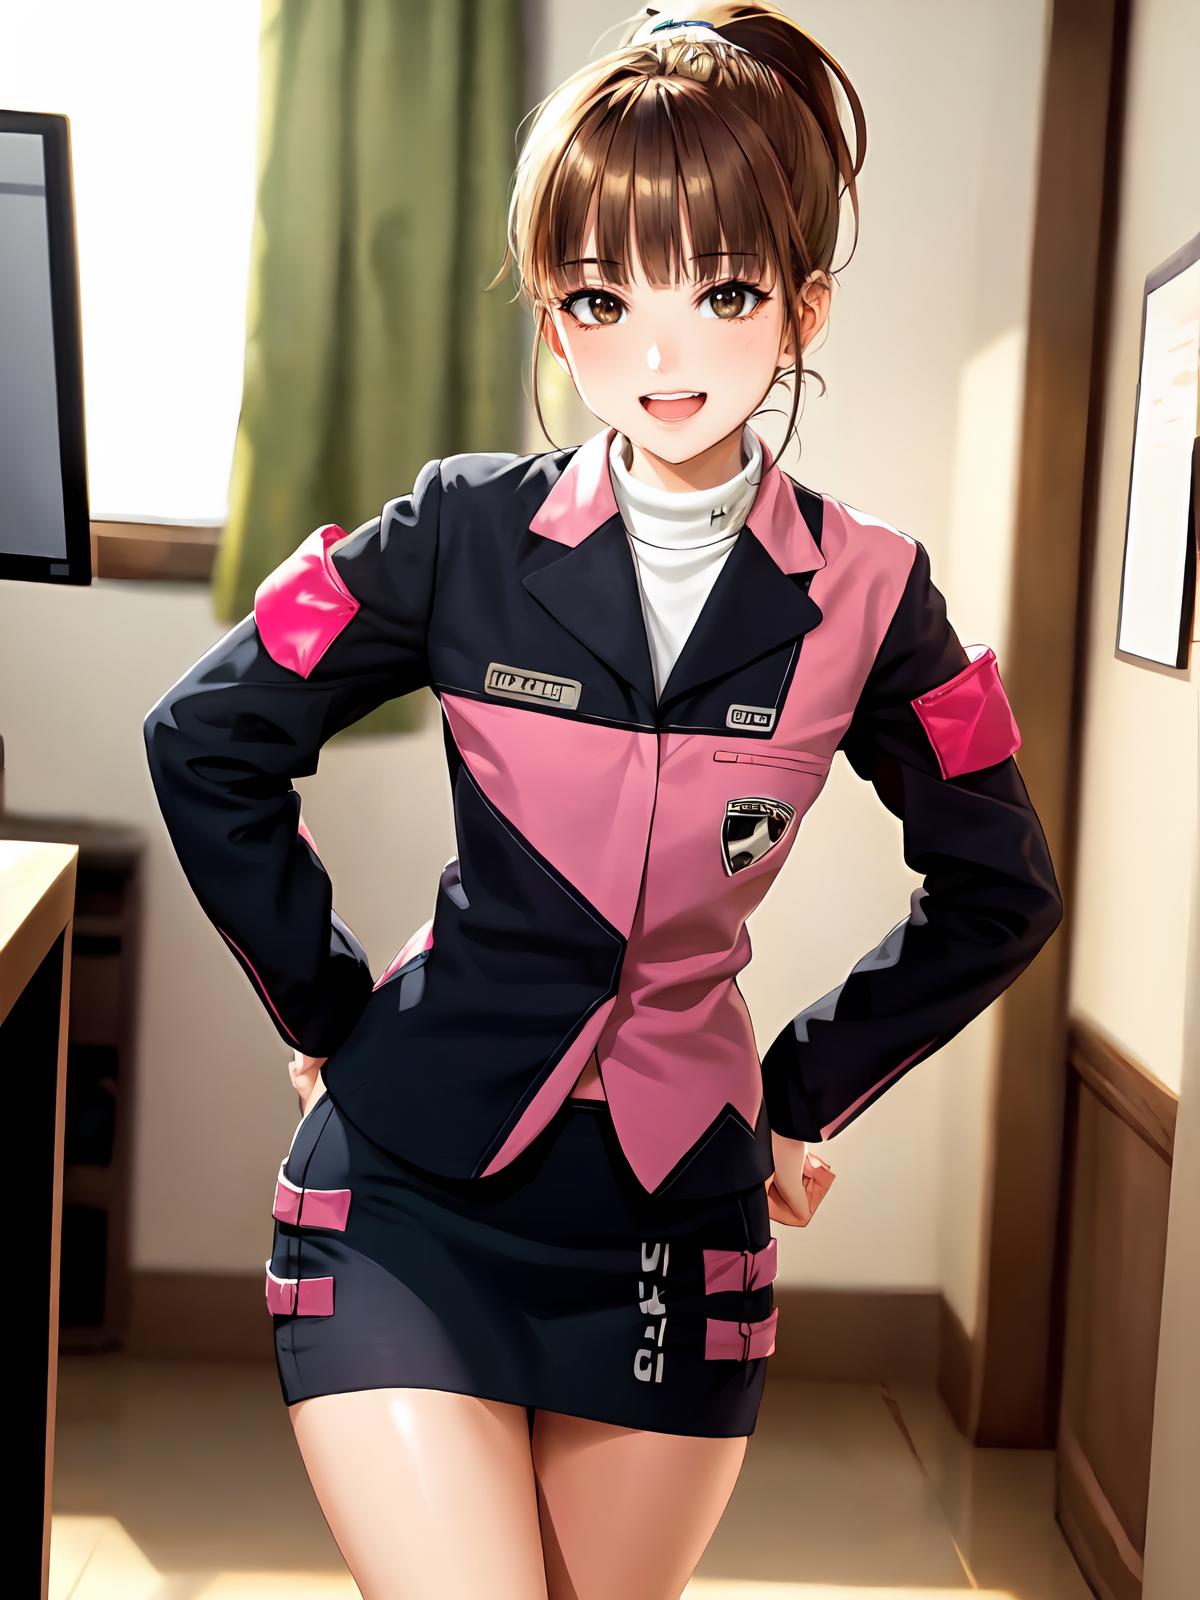 Koume Kodou / Umeko - Tokusou Sentai Dekaranger image by Chichiue_Pendragon